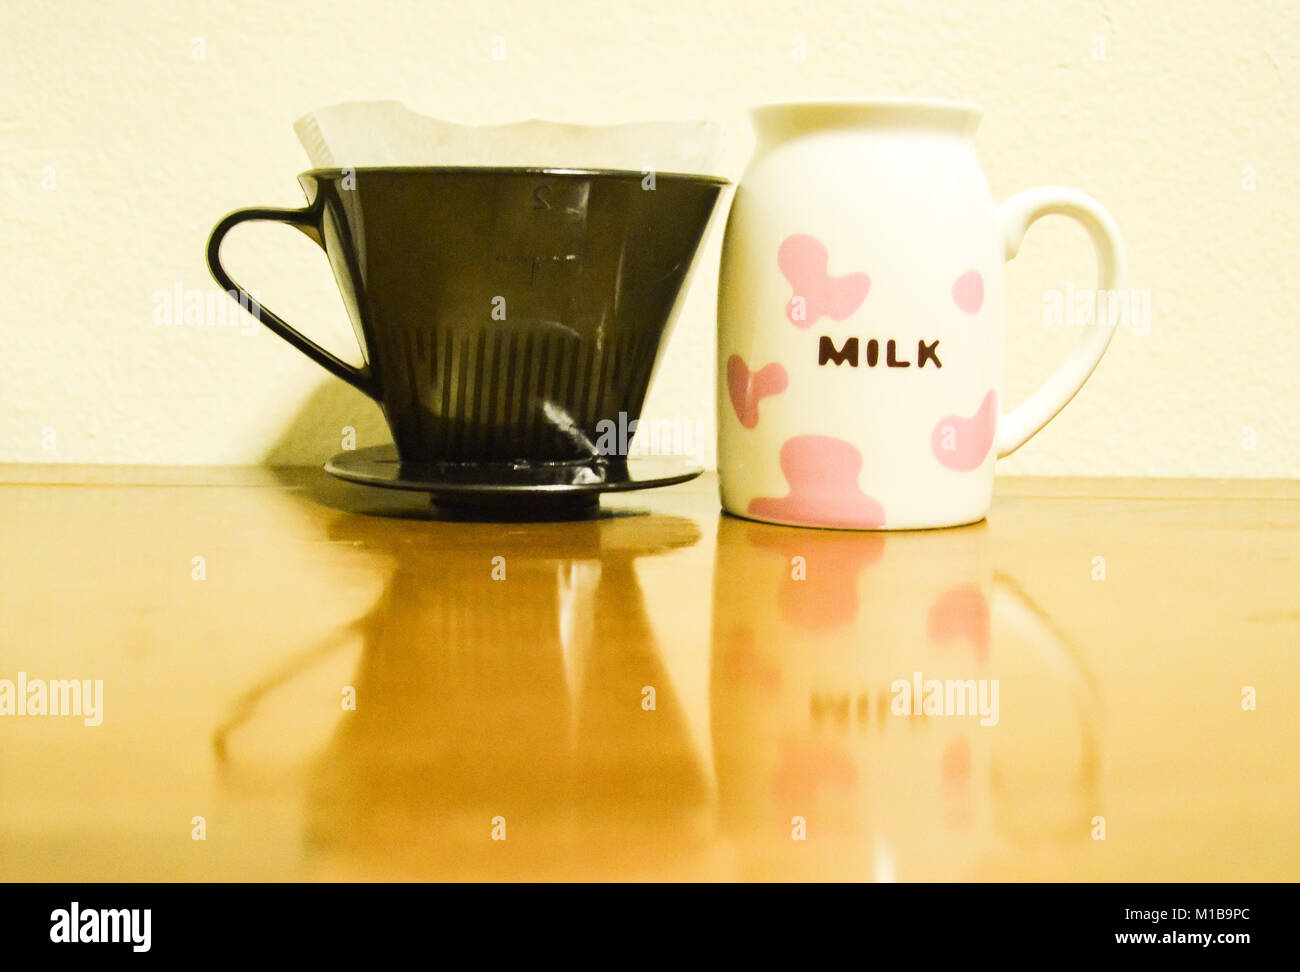 Une tasse de café avec le mot 'Milk' écrit à côté d'un filtre à café. Une image illustrant l'ironie Banque D'Images